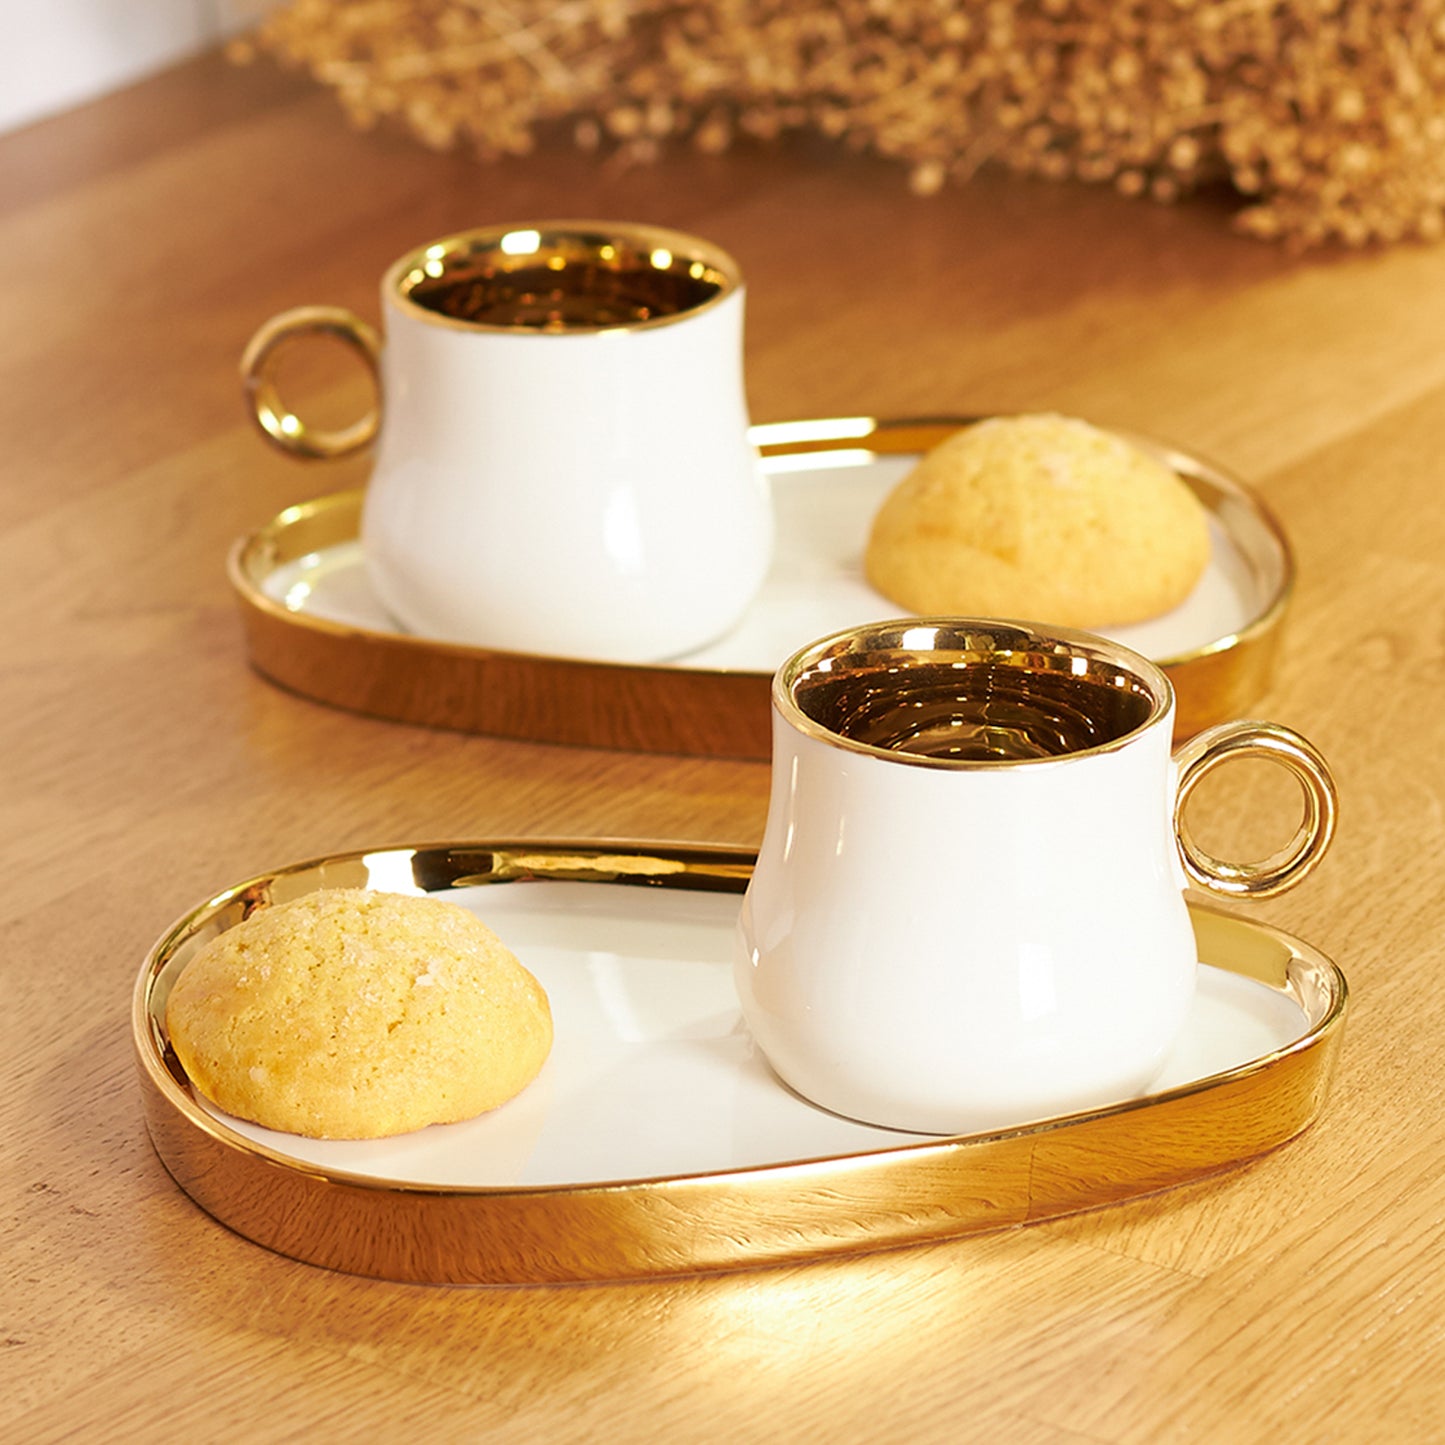 Karaca Klara 4 Pieces Coffee Cup Set For 2 Person